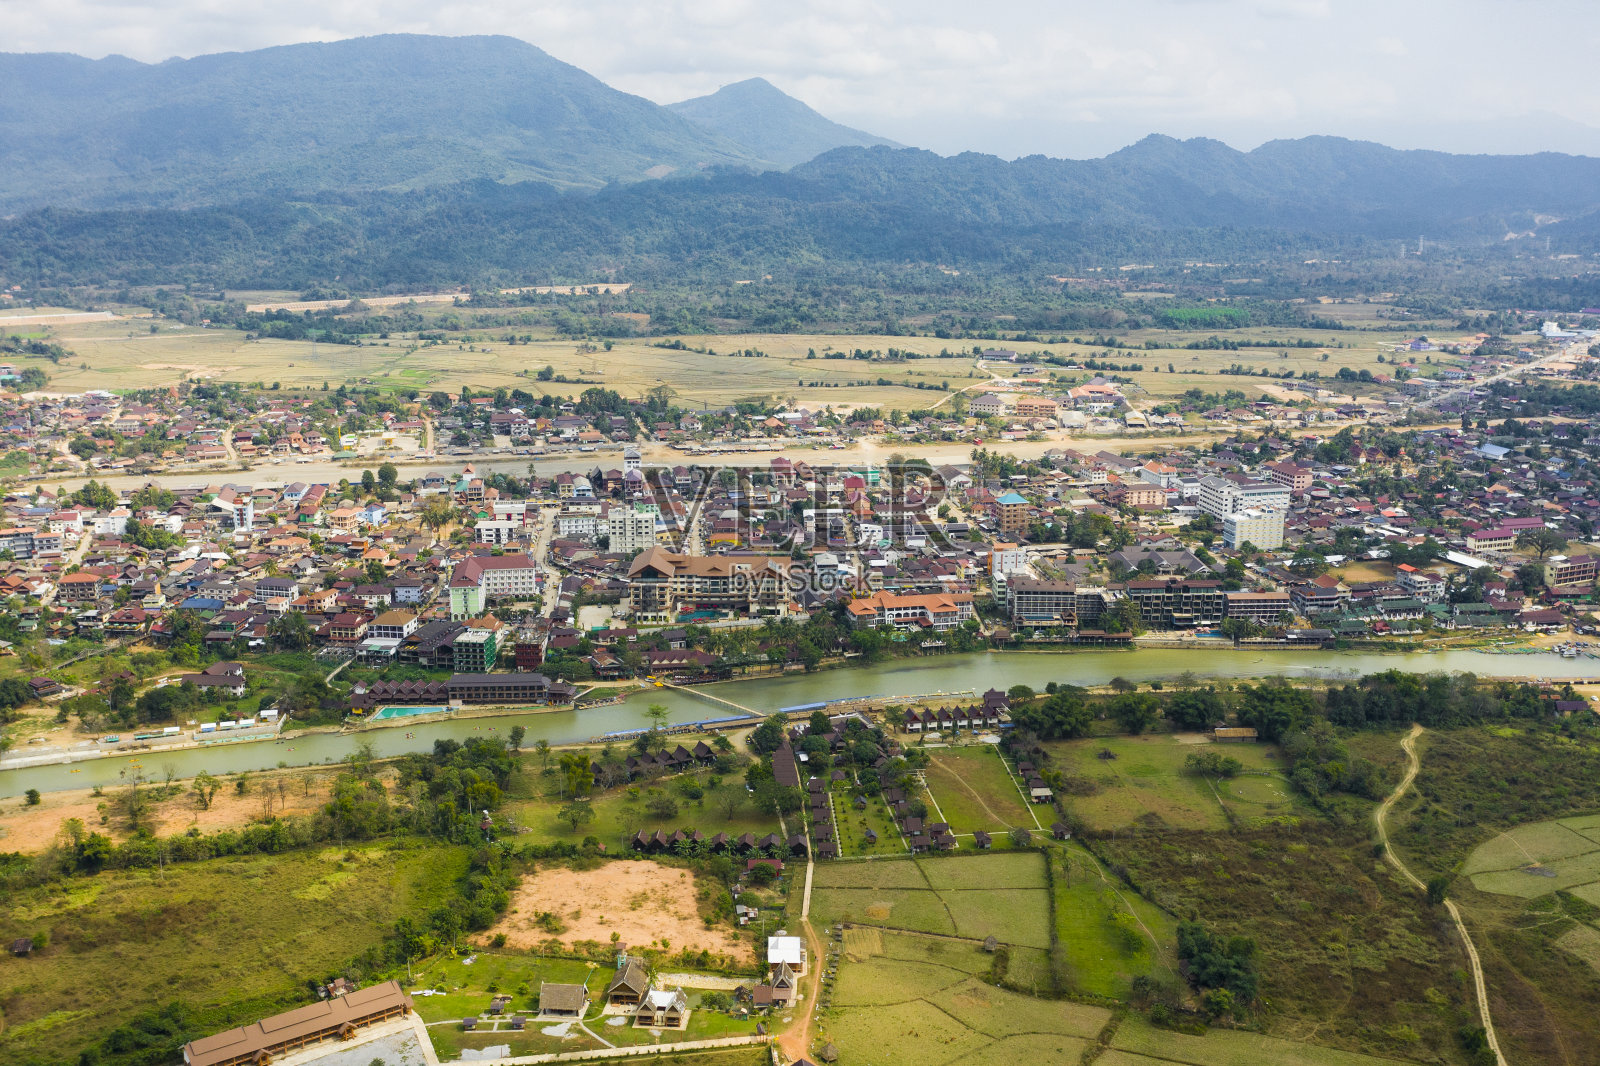 从上面俯瞰，鸟瞰美丽的城市Vang Vieng。万荣(Vang Viang)是老挝万象省的一个旅游小镇，距首都曼谷北部大约4小时的车程。照片摄影图片